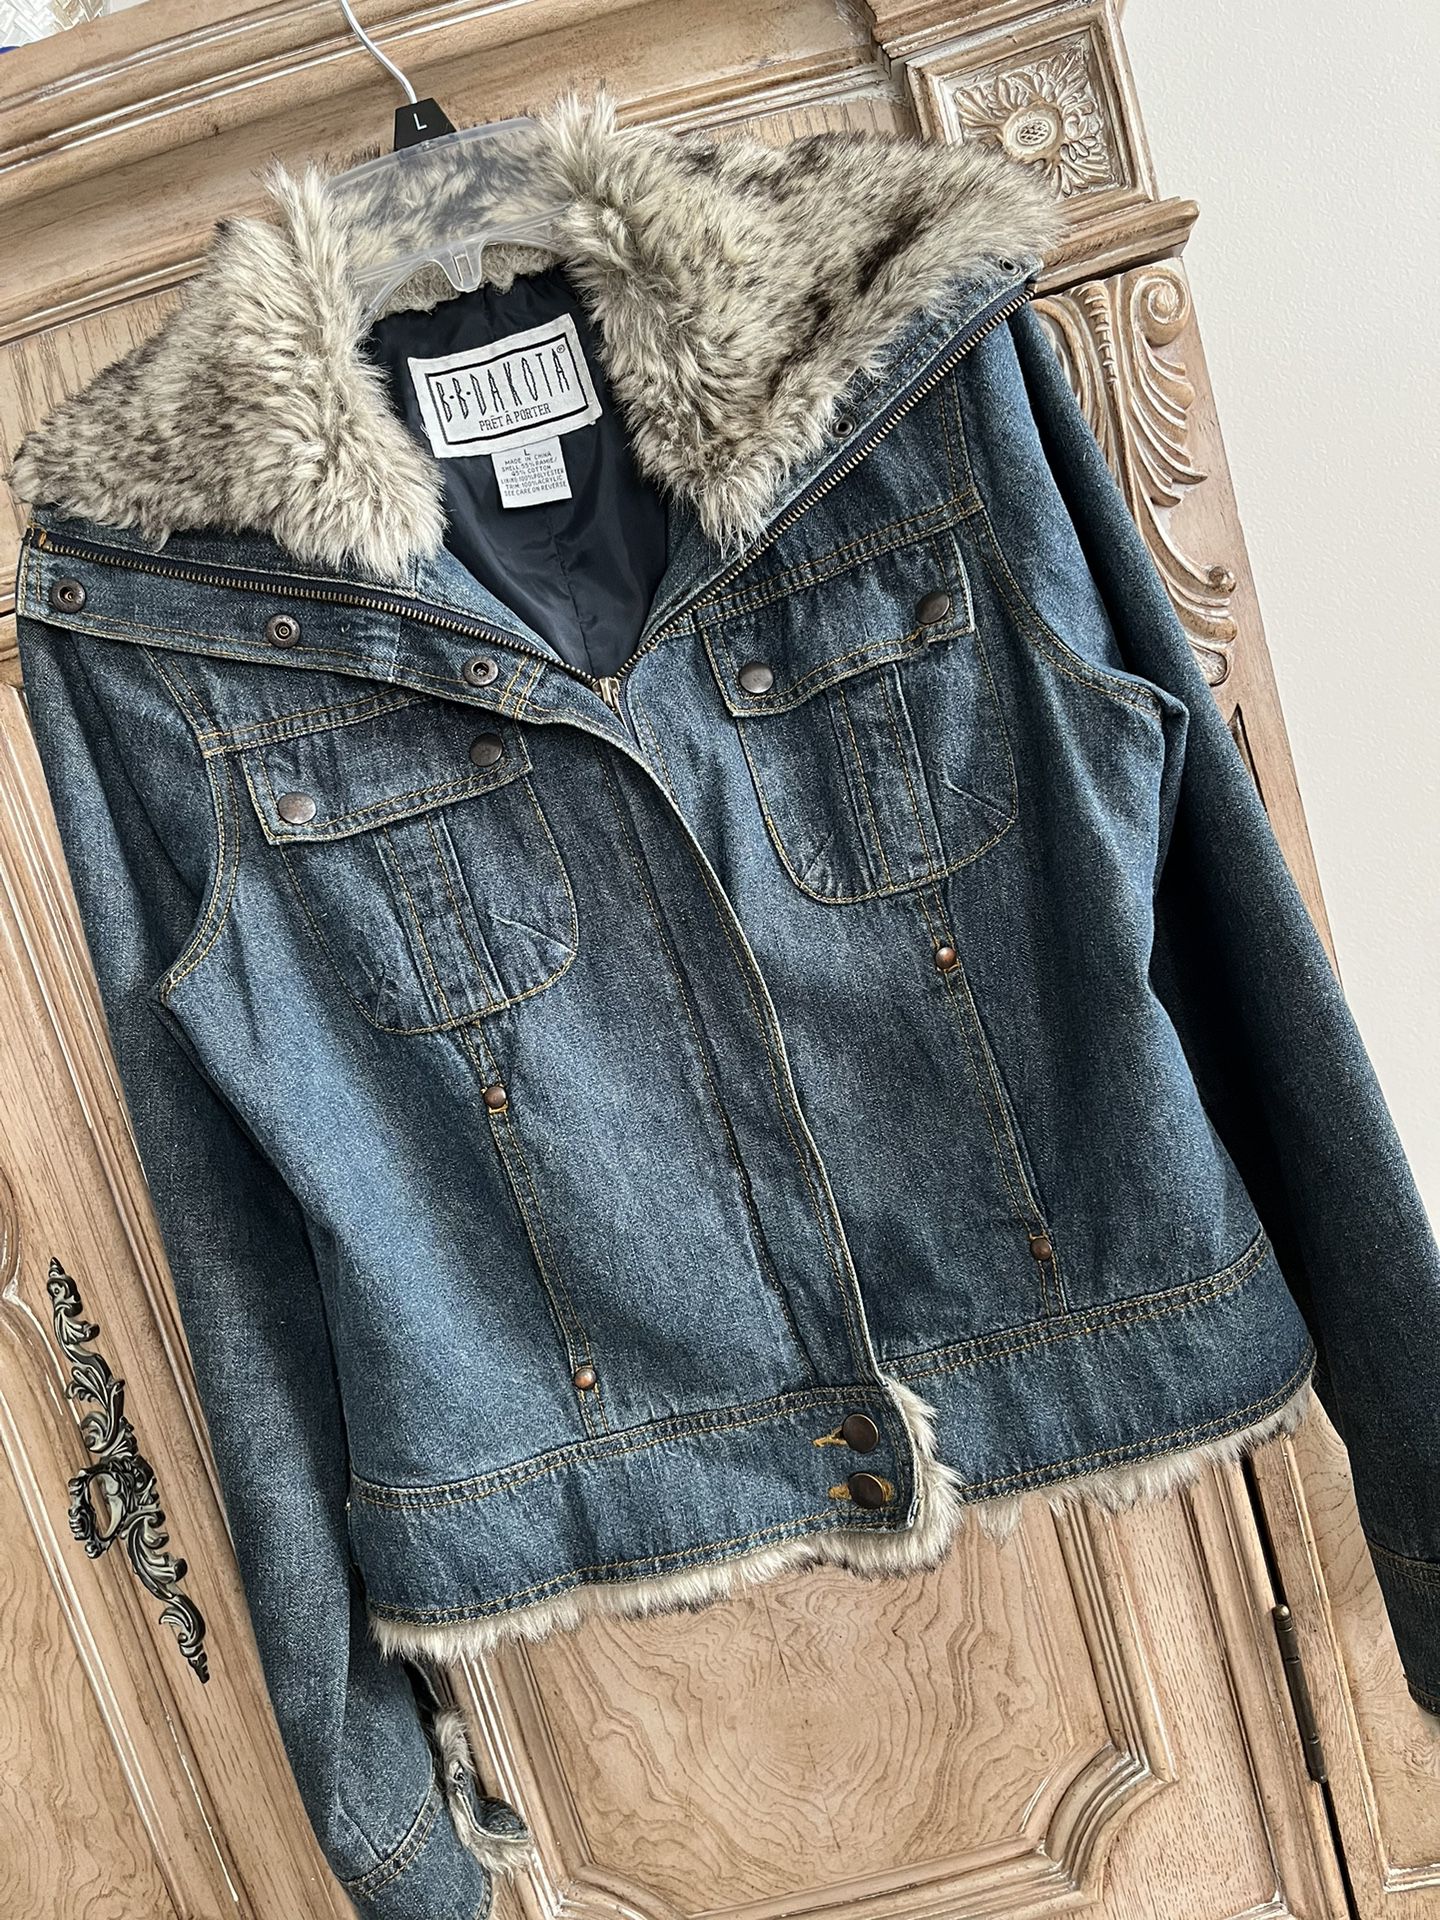 Women’s Jean Jacket w/Faux Fur - Size Junior’s Large from Macy’s